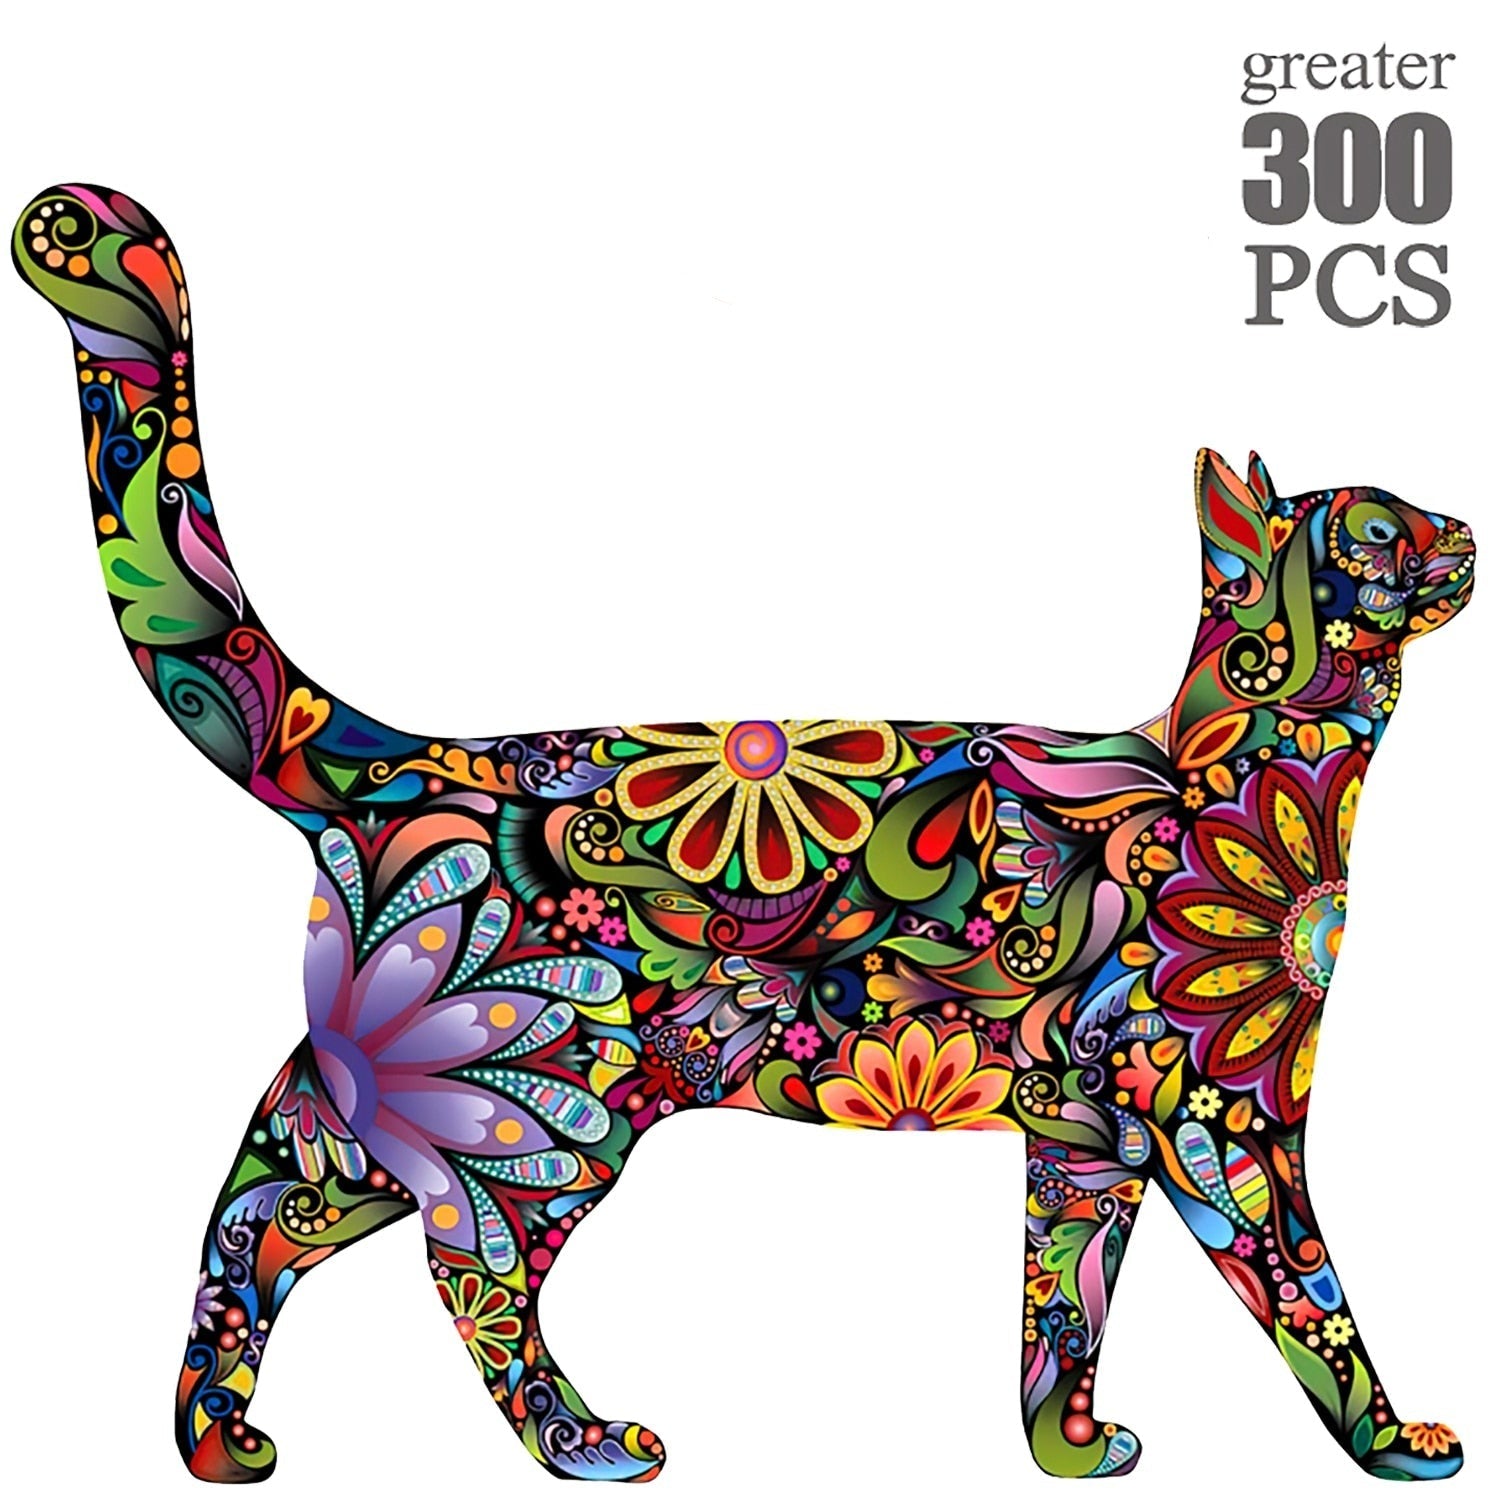 Pet Shop - 300 Piece